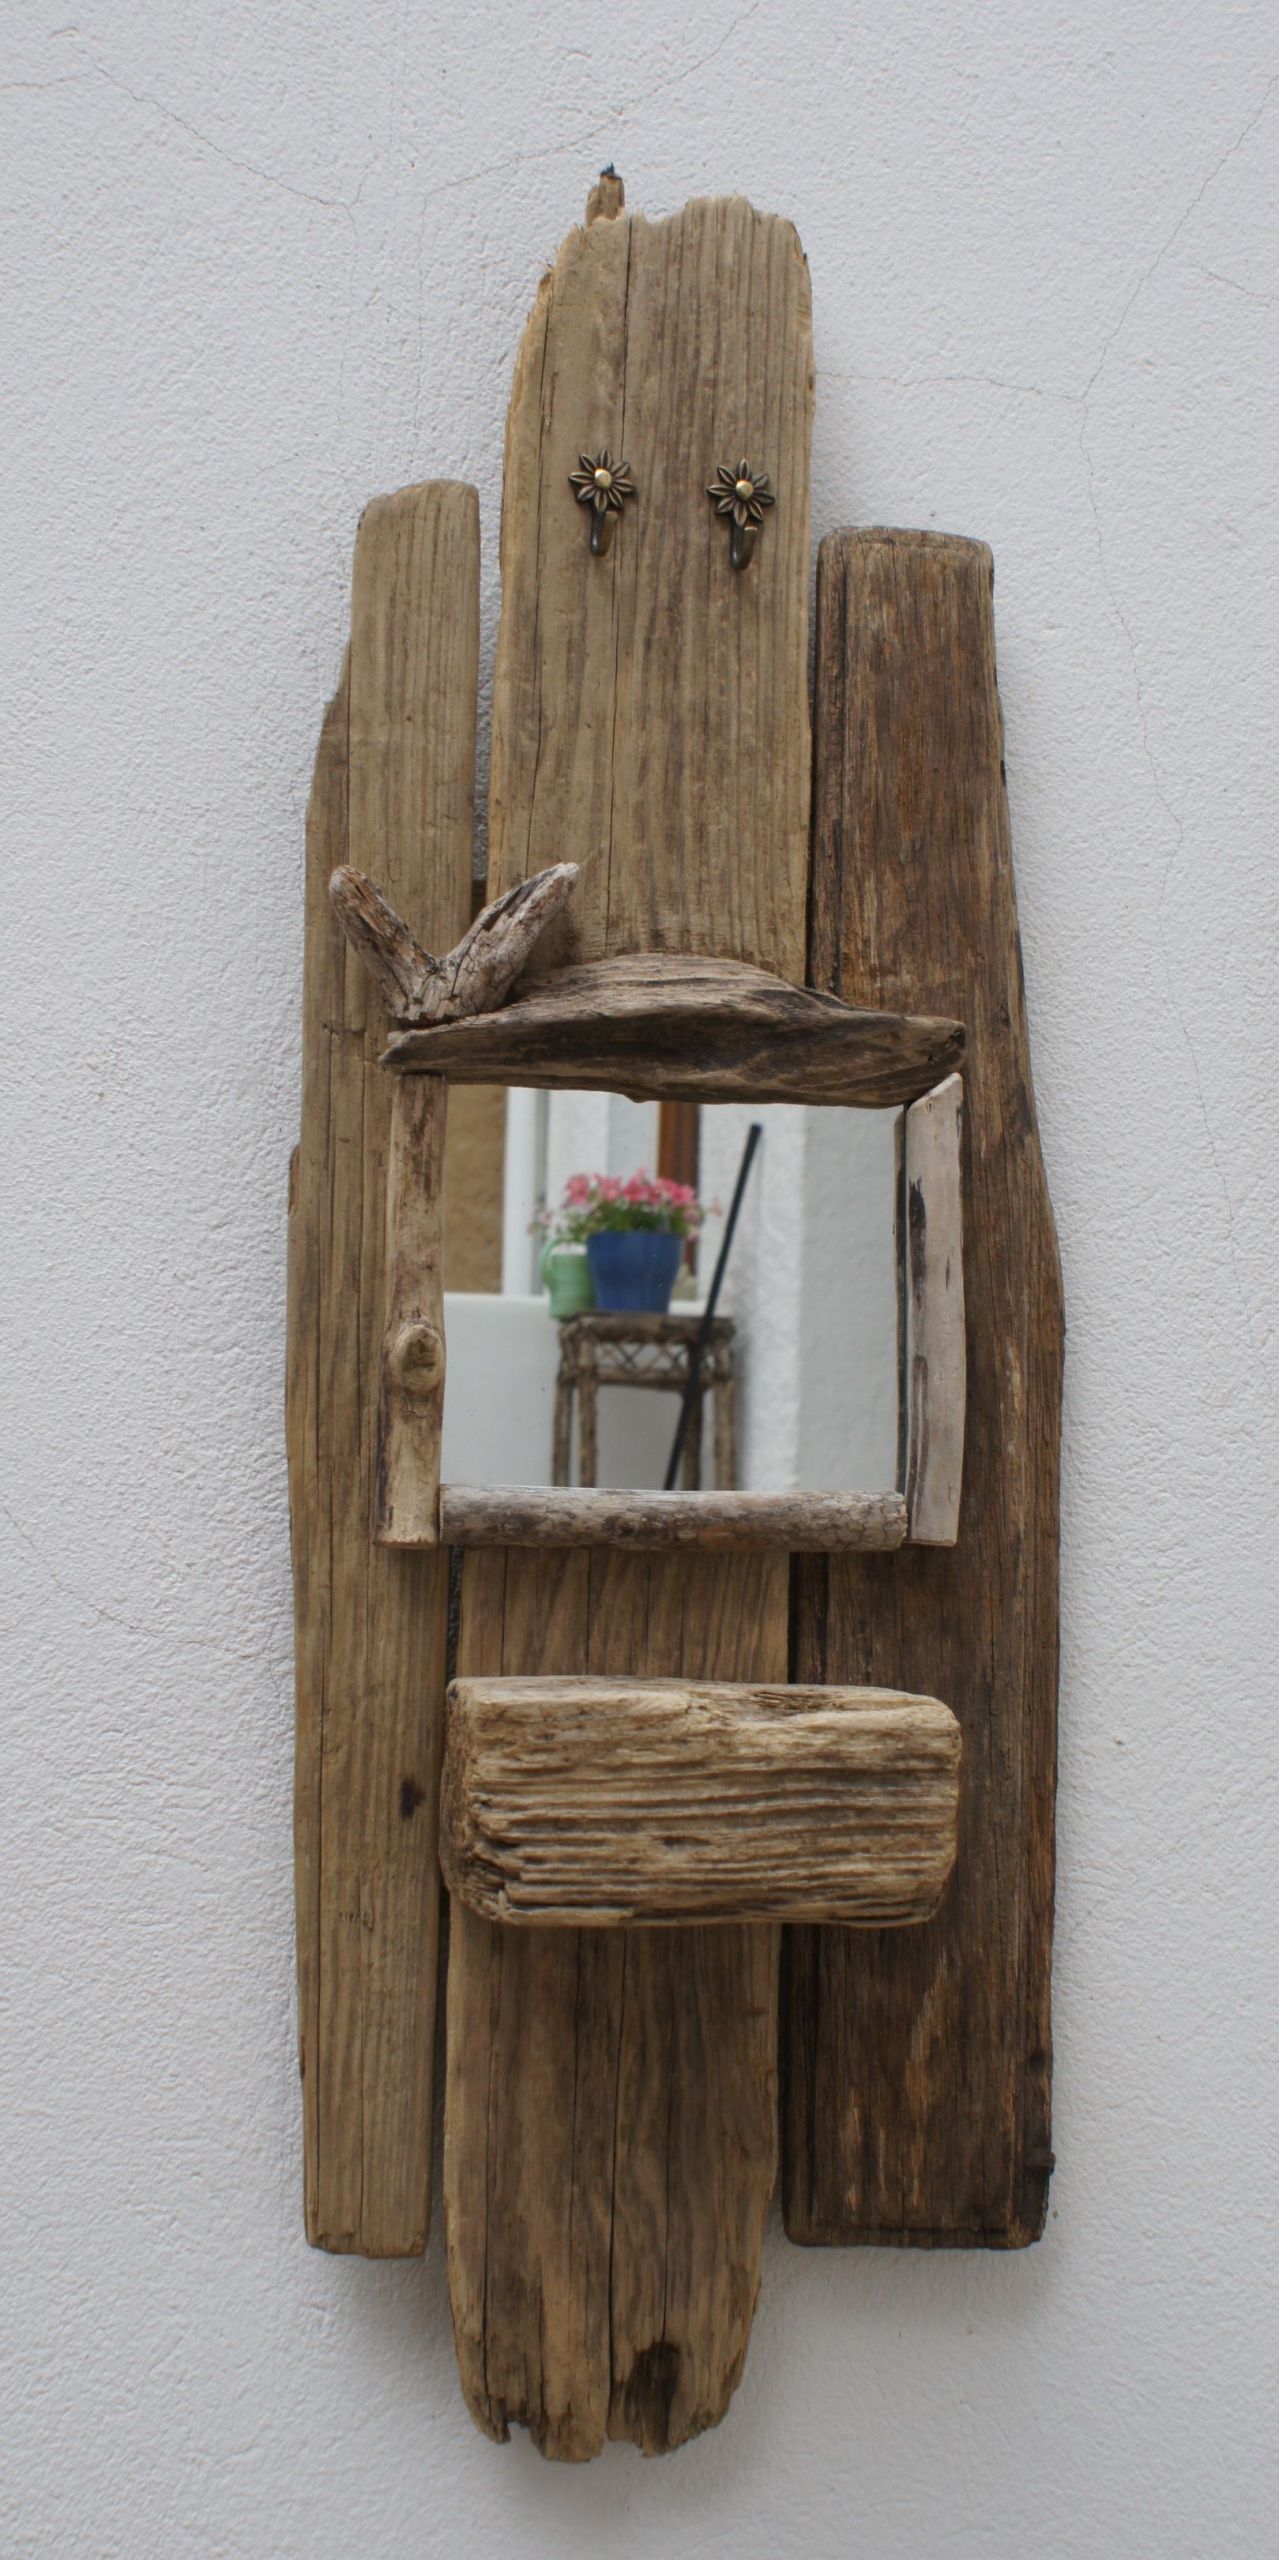 Deko Holz Selber Machen Inspirierend Spiegel Aus Treibholz